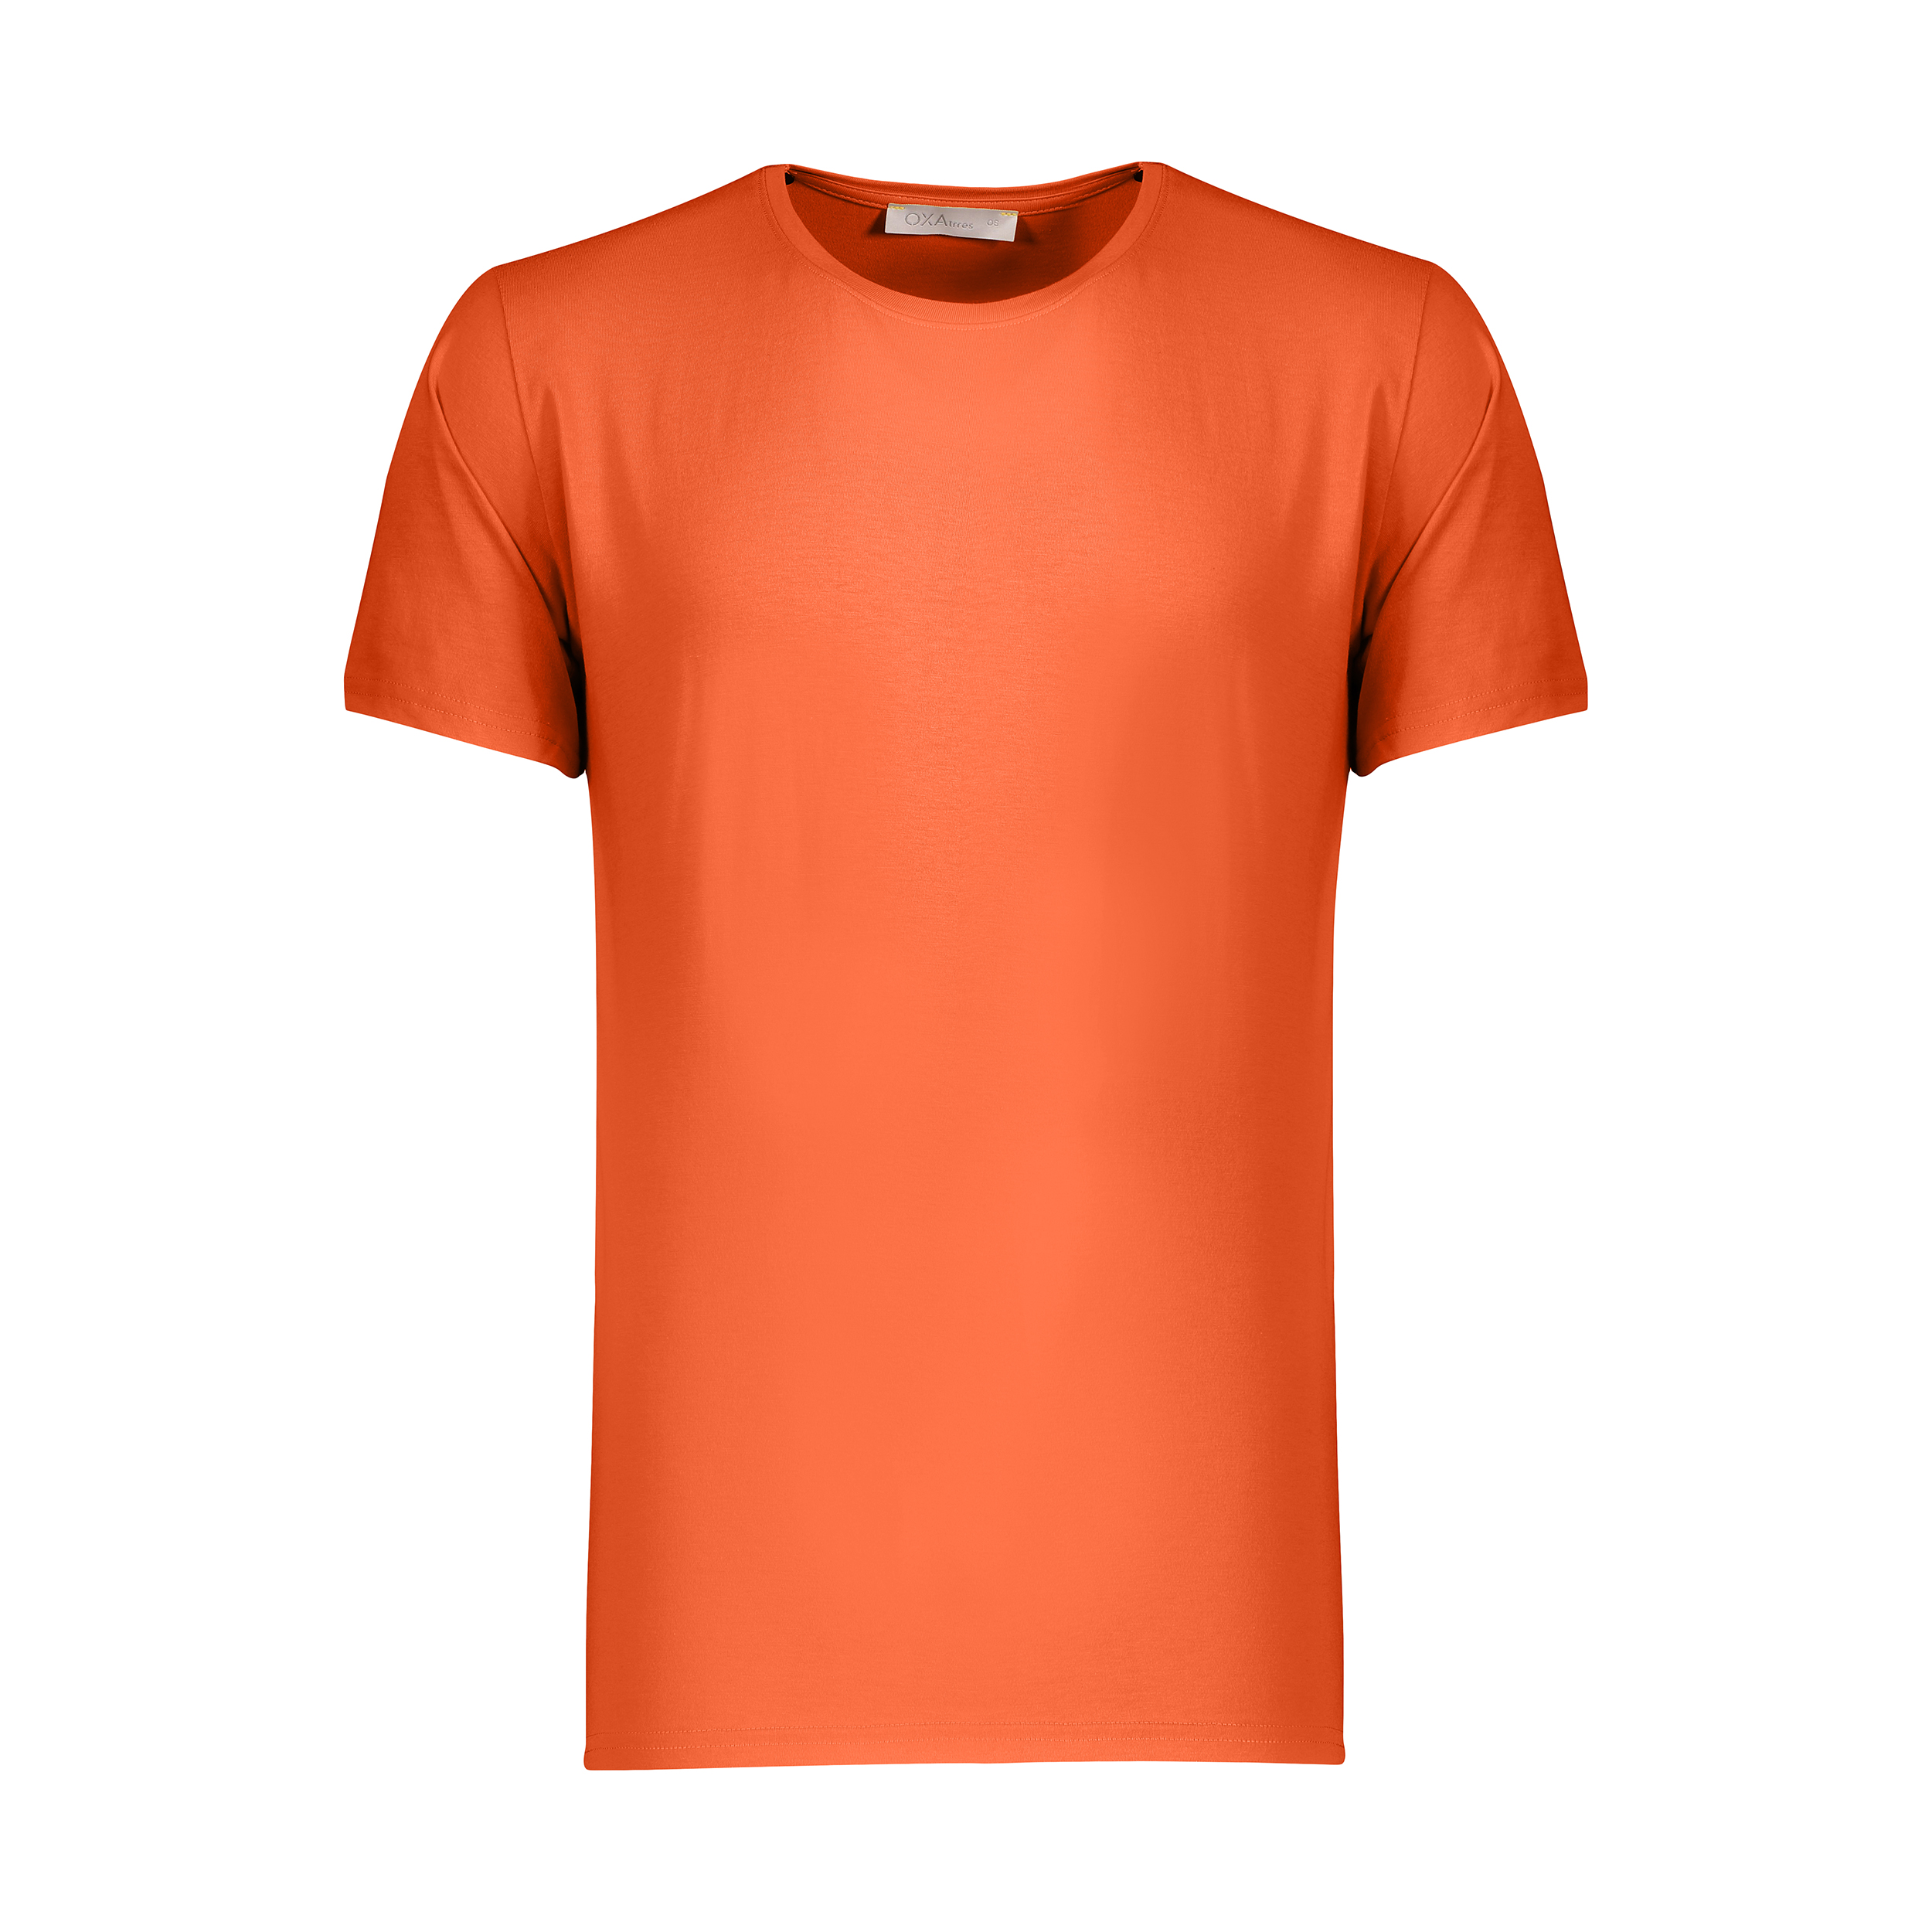 تی شرت مردانه اکزاترس مدل P032001016370100-016